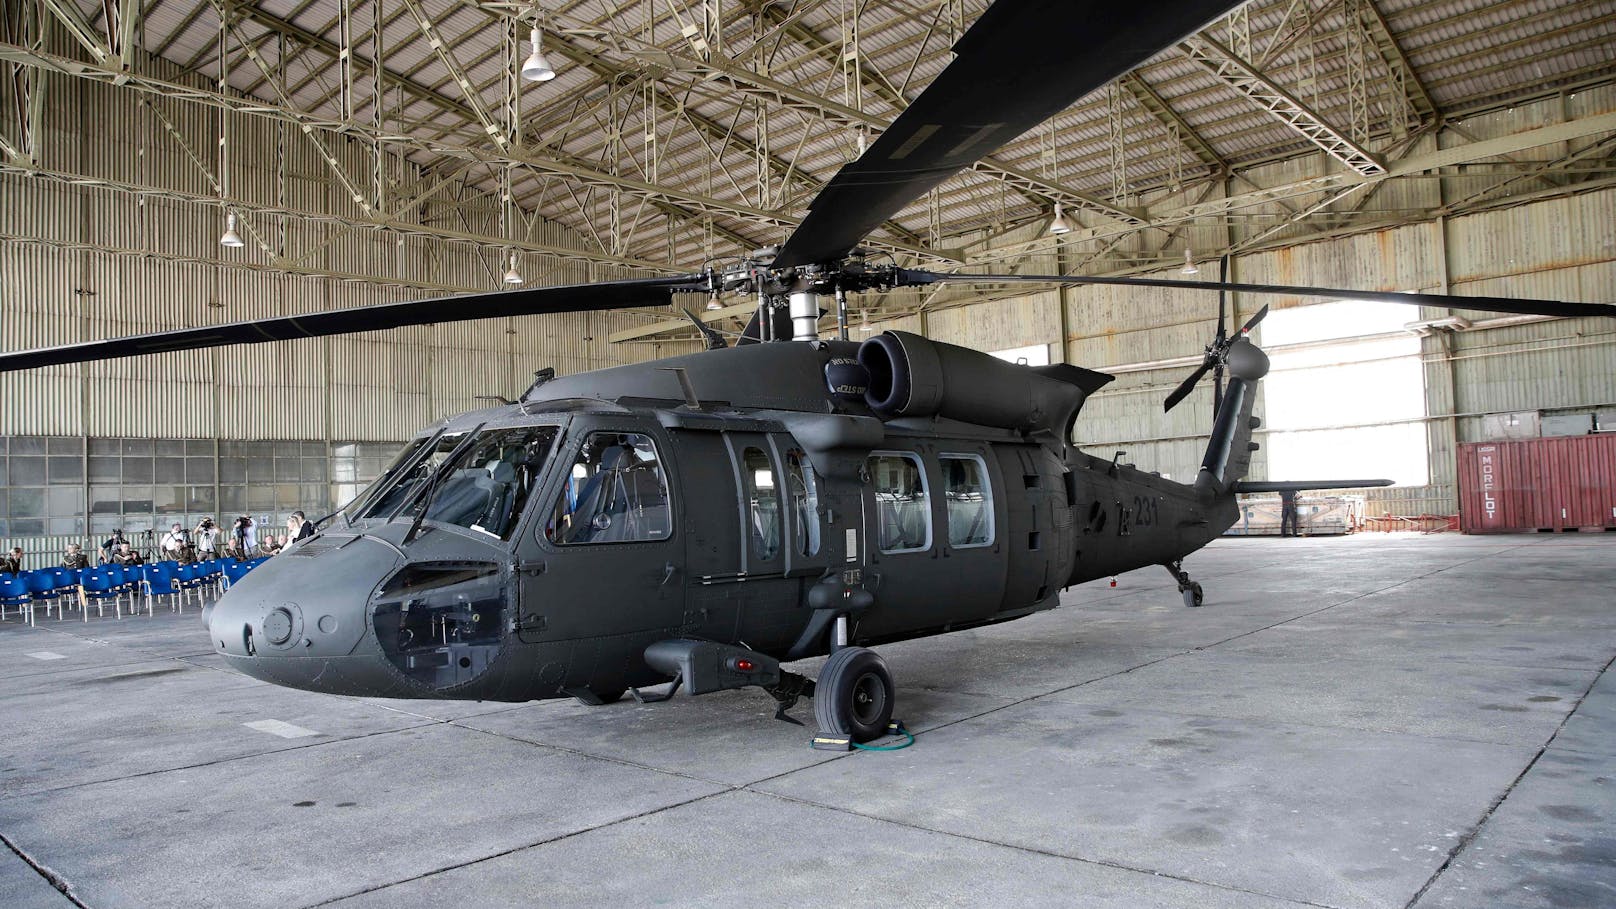 300 km/h schnell – Bundesheer kauft 12 neue Black Hawk